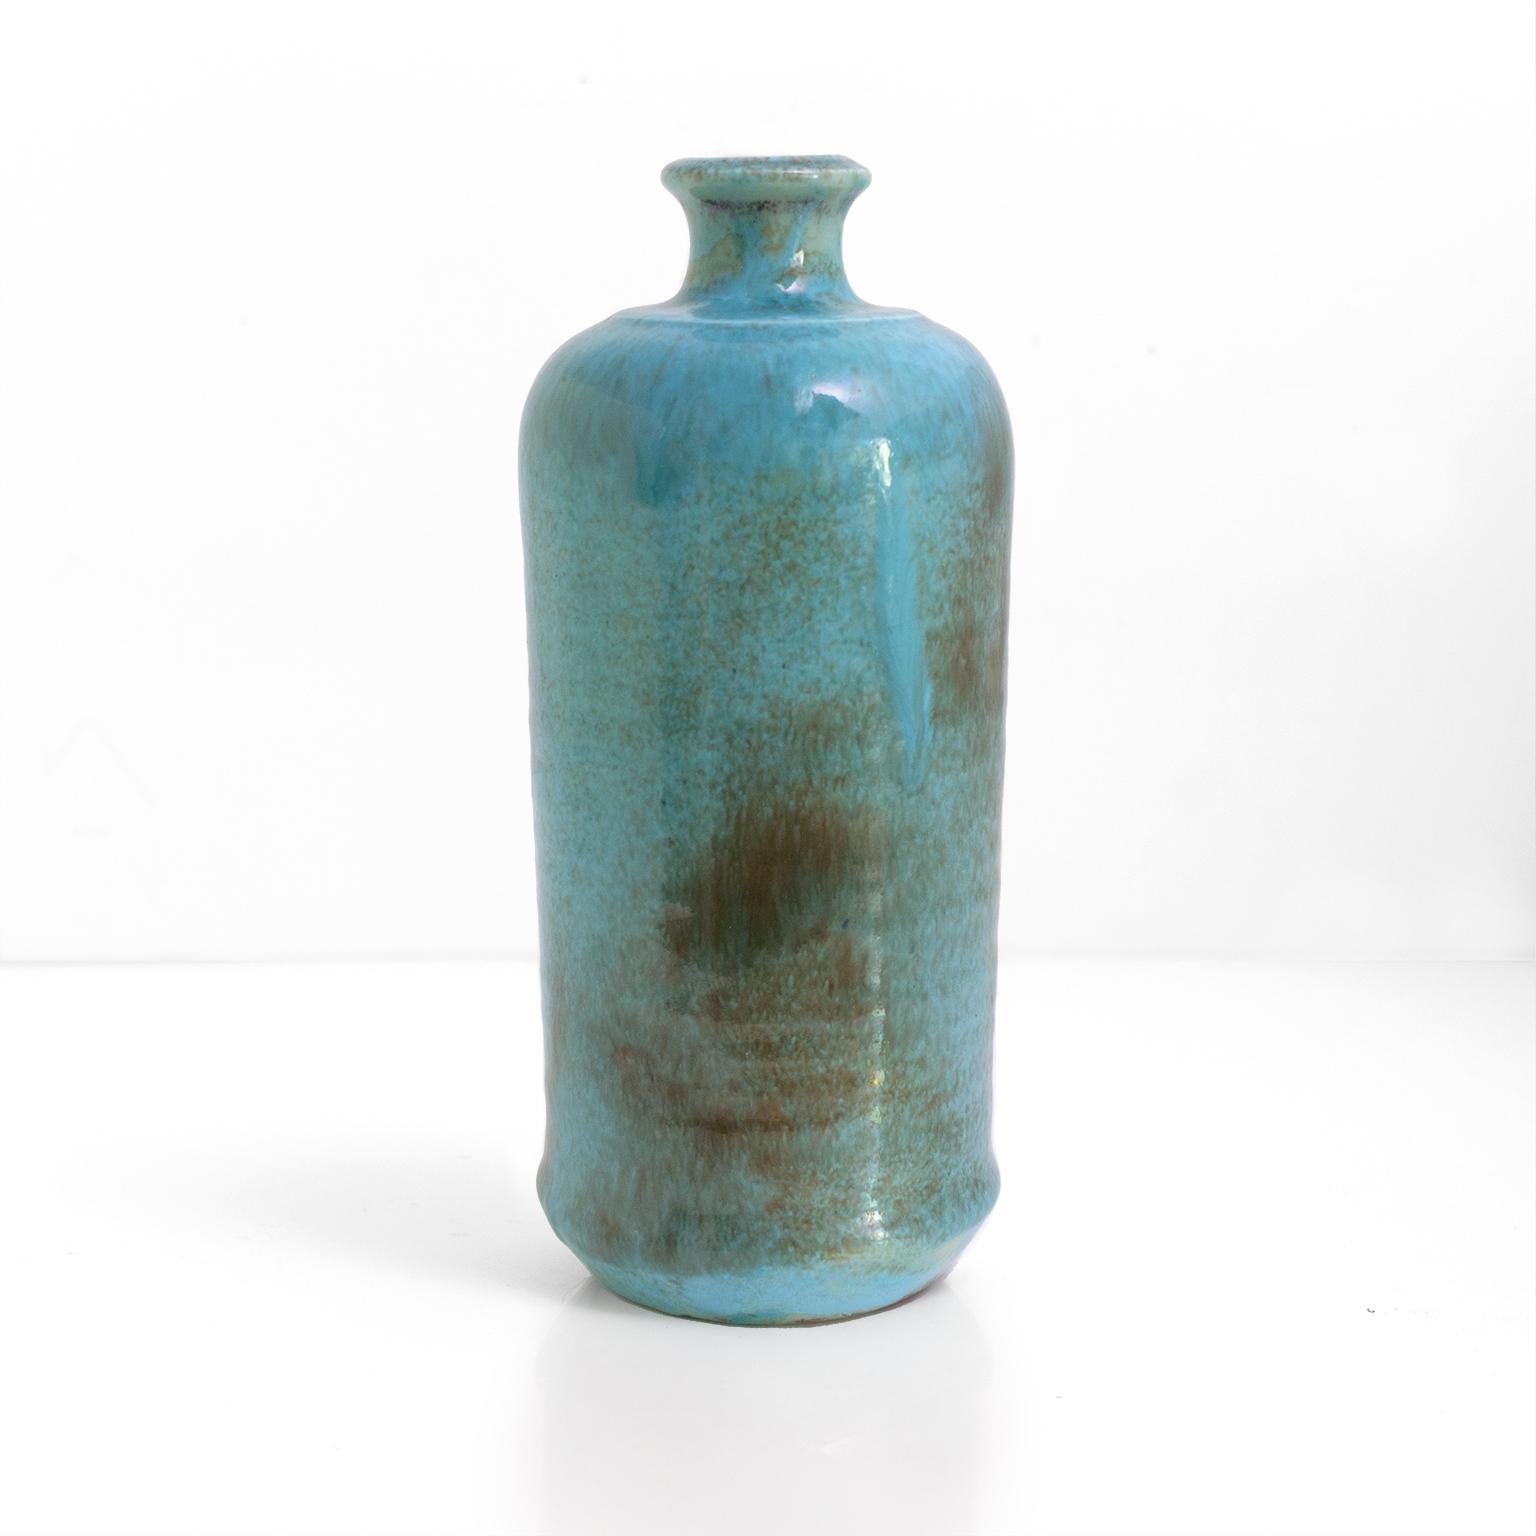 Valentina Modig-Manuel a créé un vase à boutons en céramique turquoise, de 1952, produit au Studio Keramos, Finlande, signé 'WC 52' .

Mesures : Hauteur : 8,5